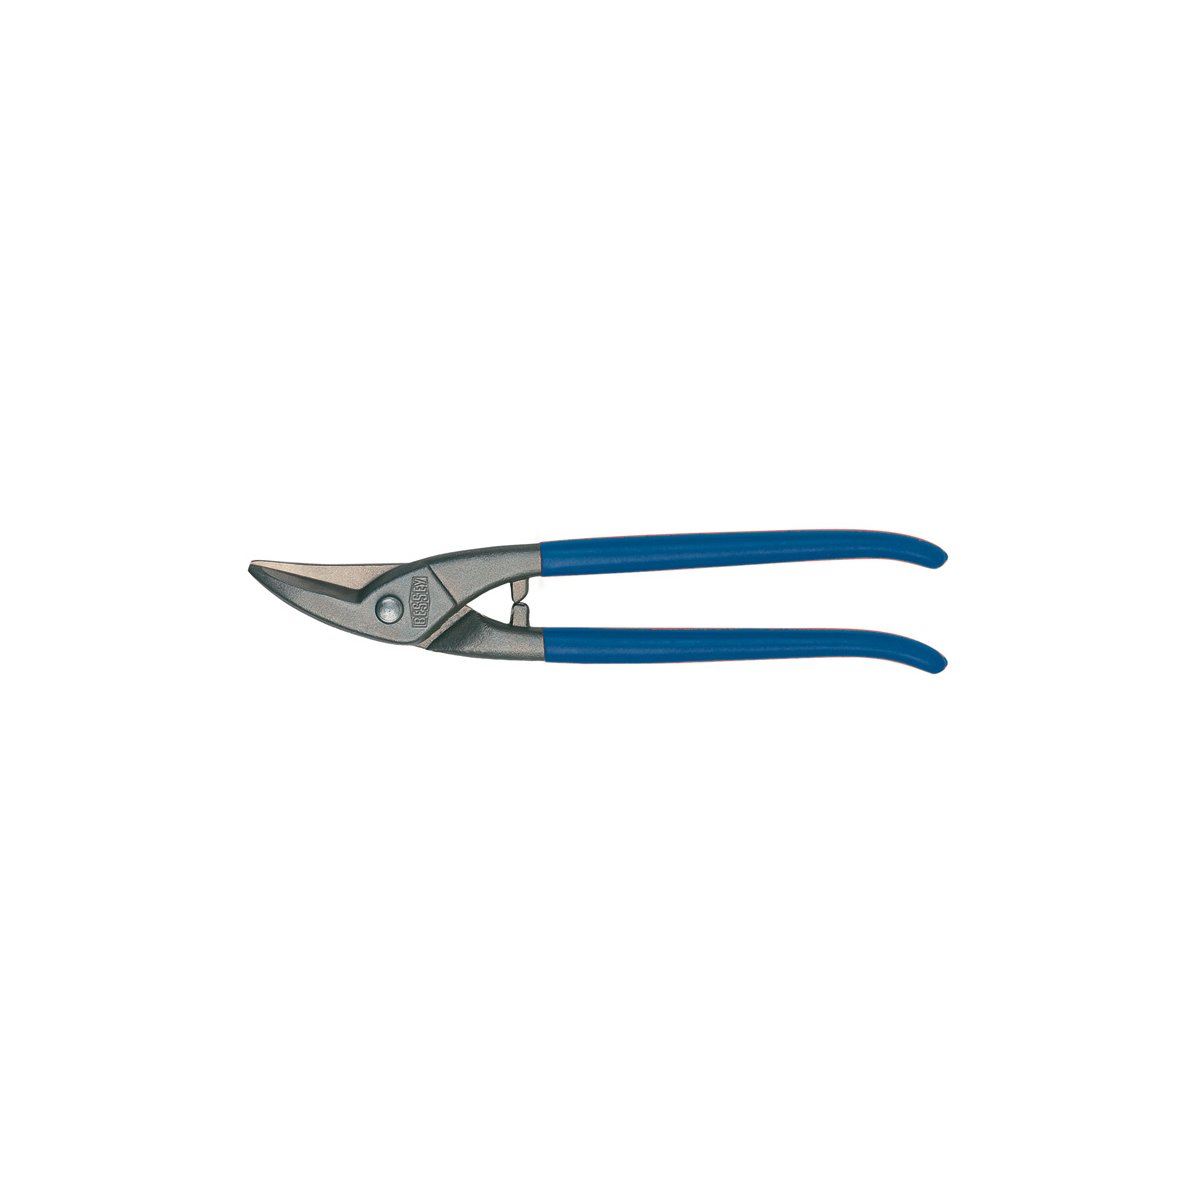 D107-225-SB Ножницы по металлу, для прорезания отверстий, правые, рез: 1.0 мм, 225 мм, короткий прямой и фигурный рез, SB